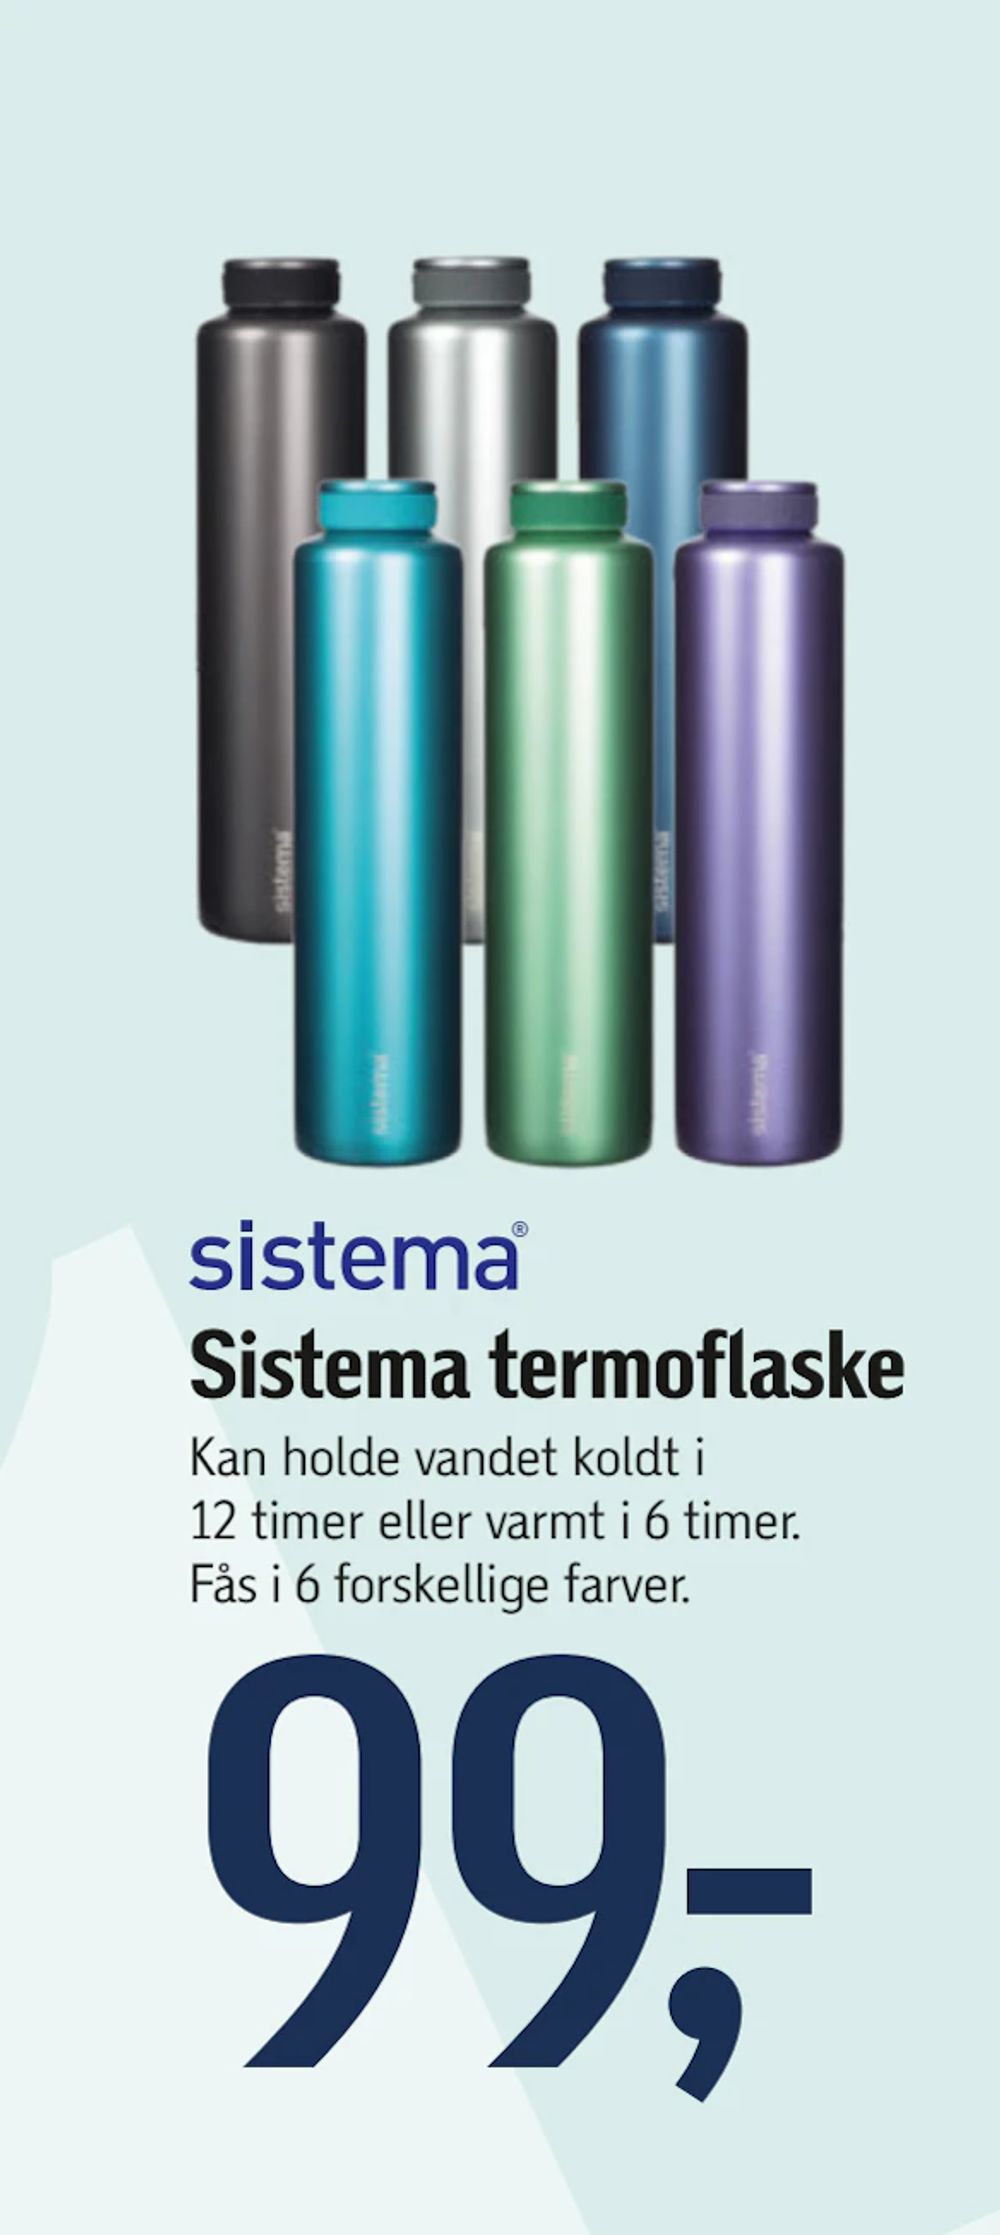 Tilbud på Sistema termoflaske fra føtex til 99 kr.